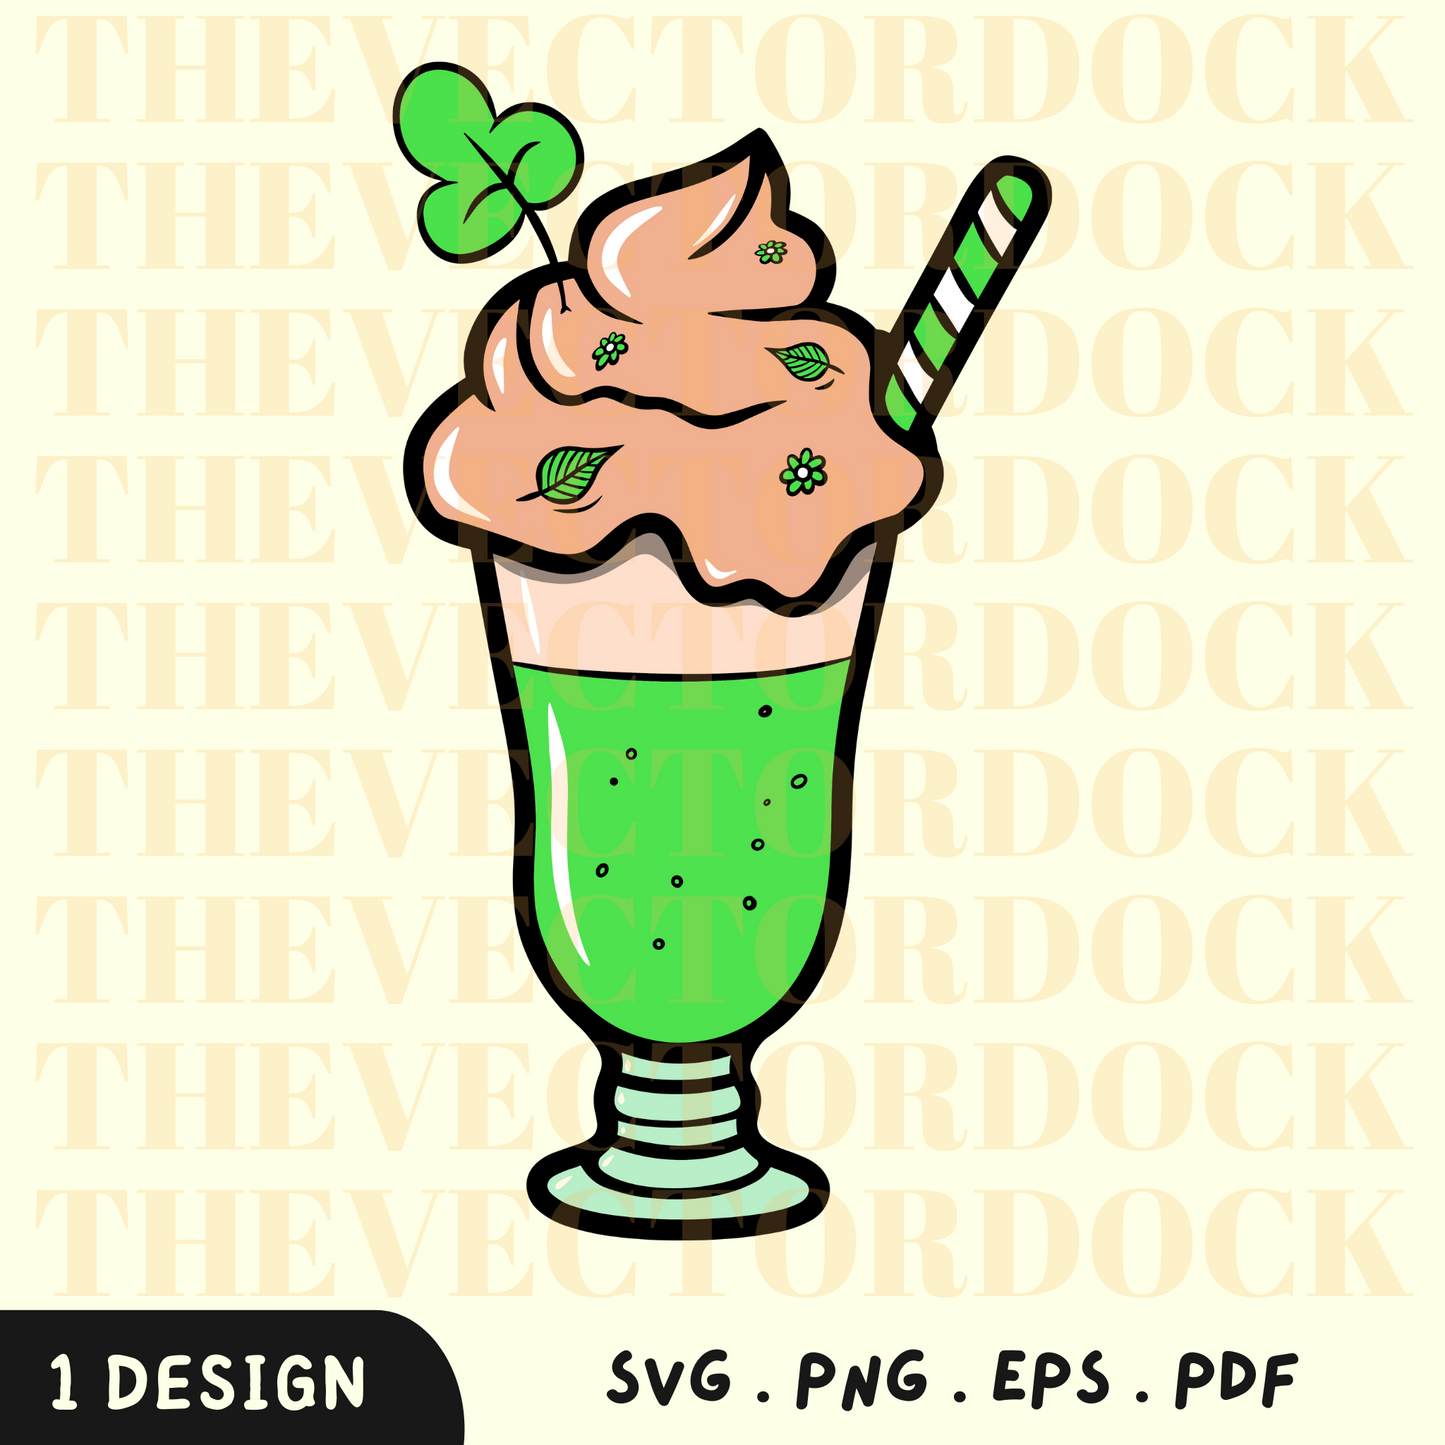 St. Patrick's Milkshake SVG Design, St. Patrick's Milkshake SVG, St. Patrick's Day, St. Patrick's Milkshake Vector